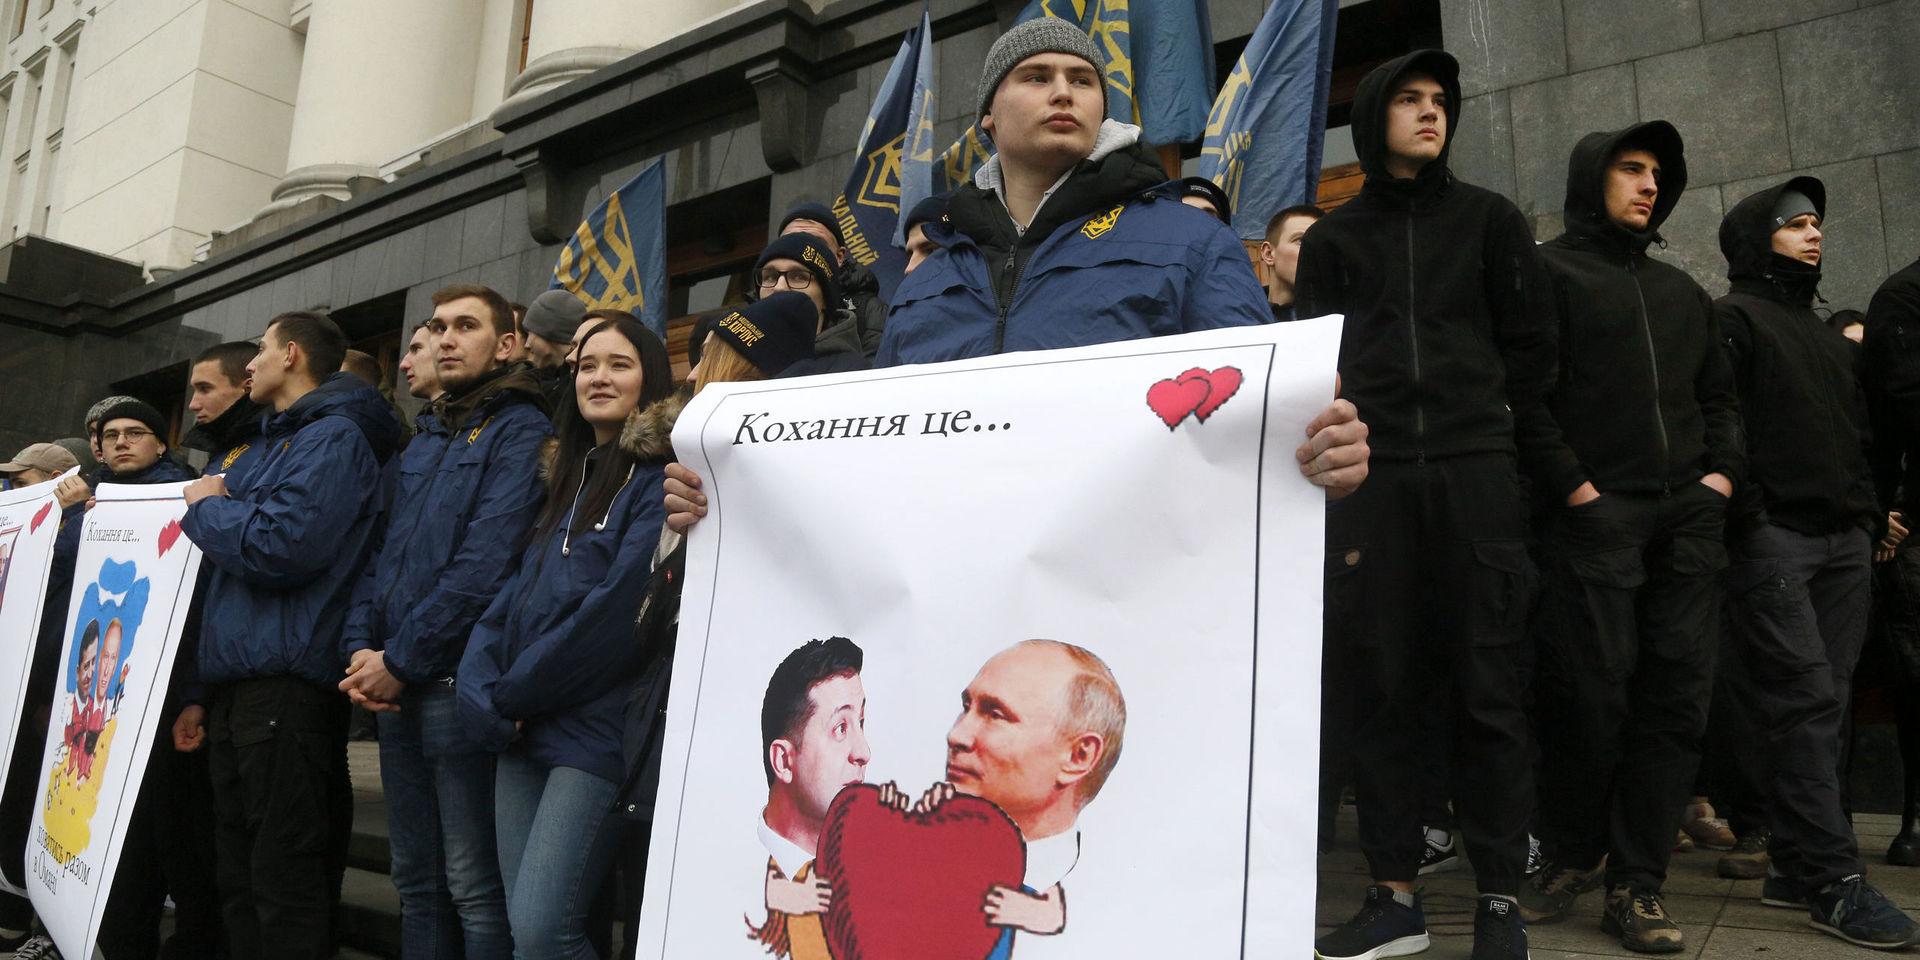 Demonstranter från den hårdföra högerrörelsen Azov demonstrerar i Kiev mot samtalen Zelenskyj–Putin. Bilden är tagen på alla hjärtans dag härom veckan.